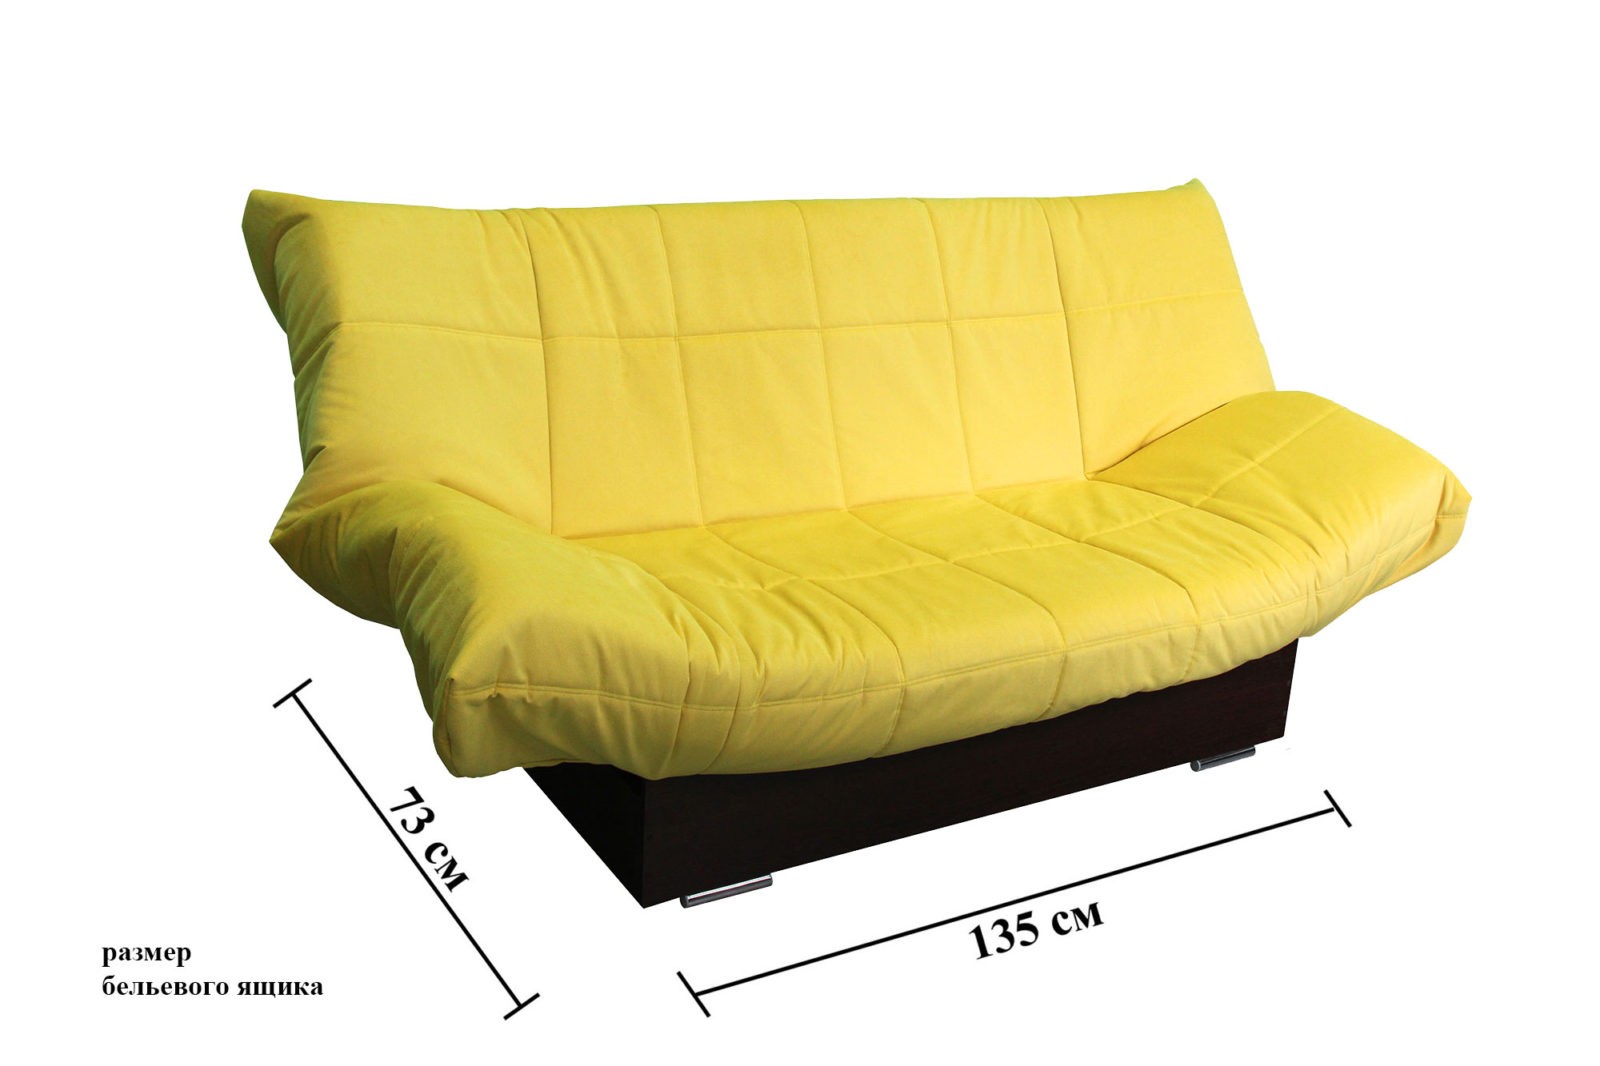 размеры клик кляк дивана в разложенном